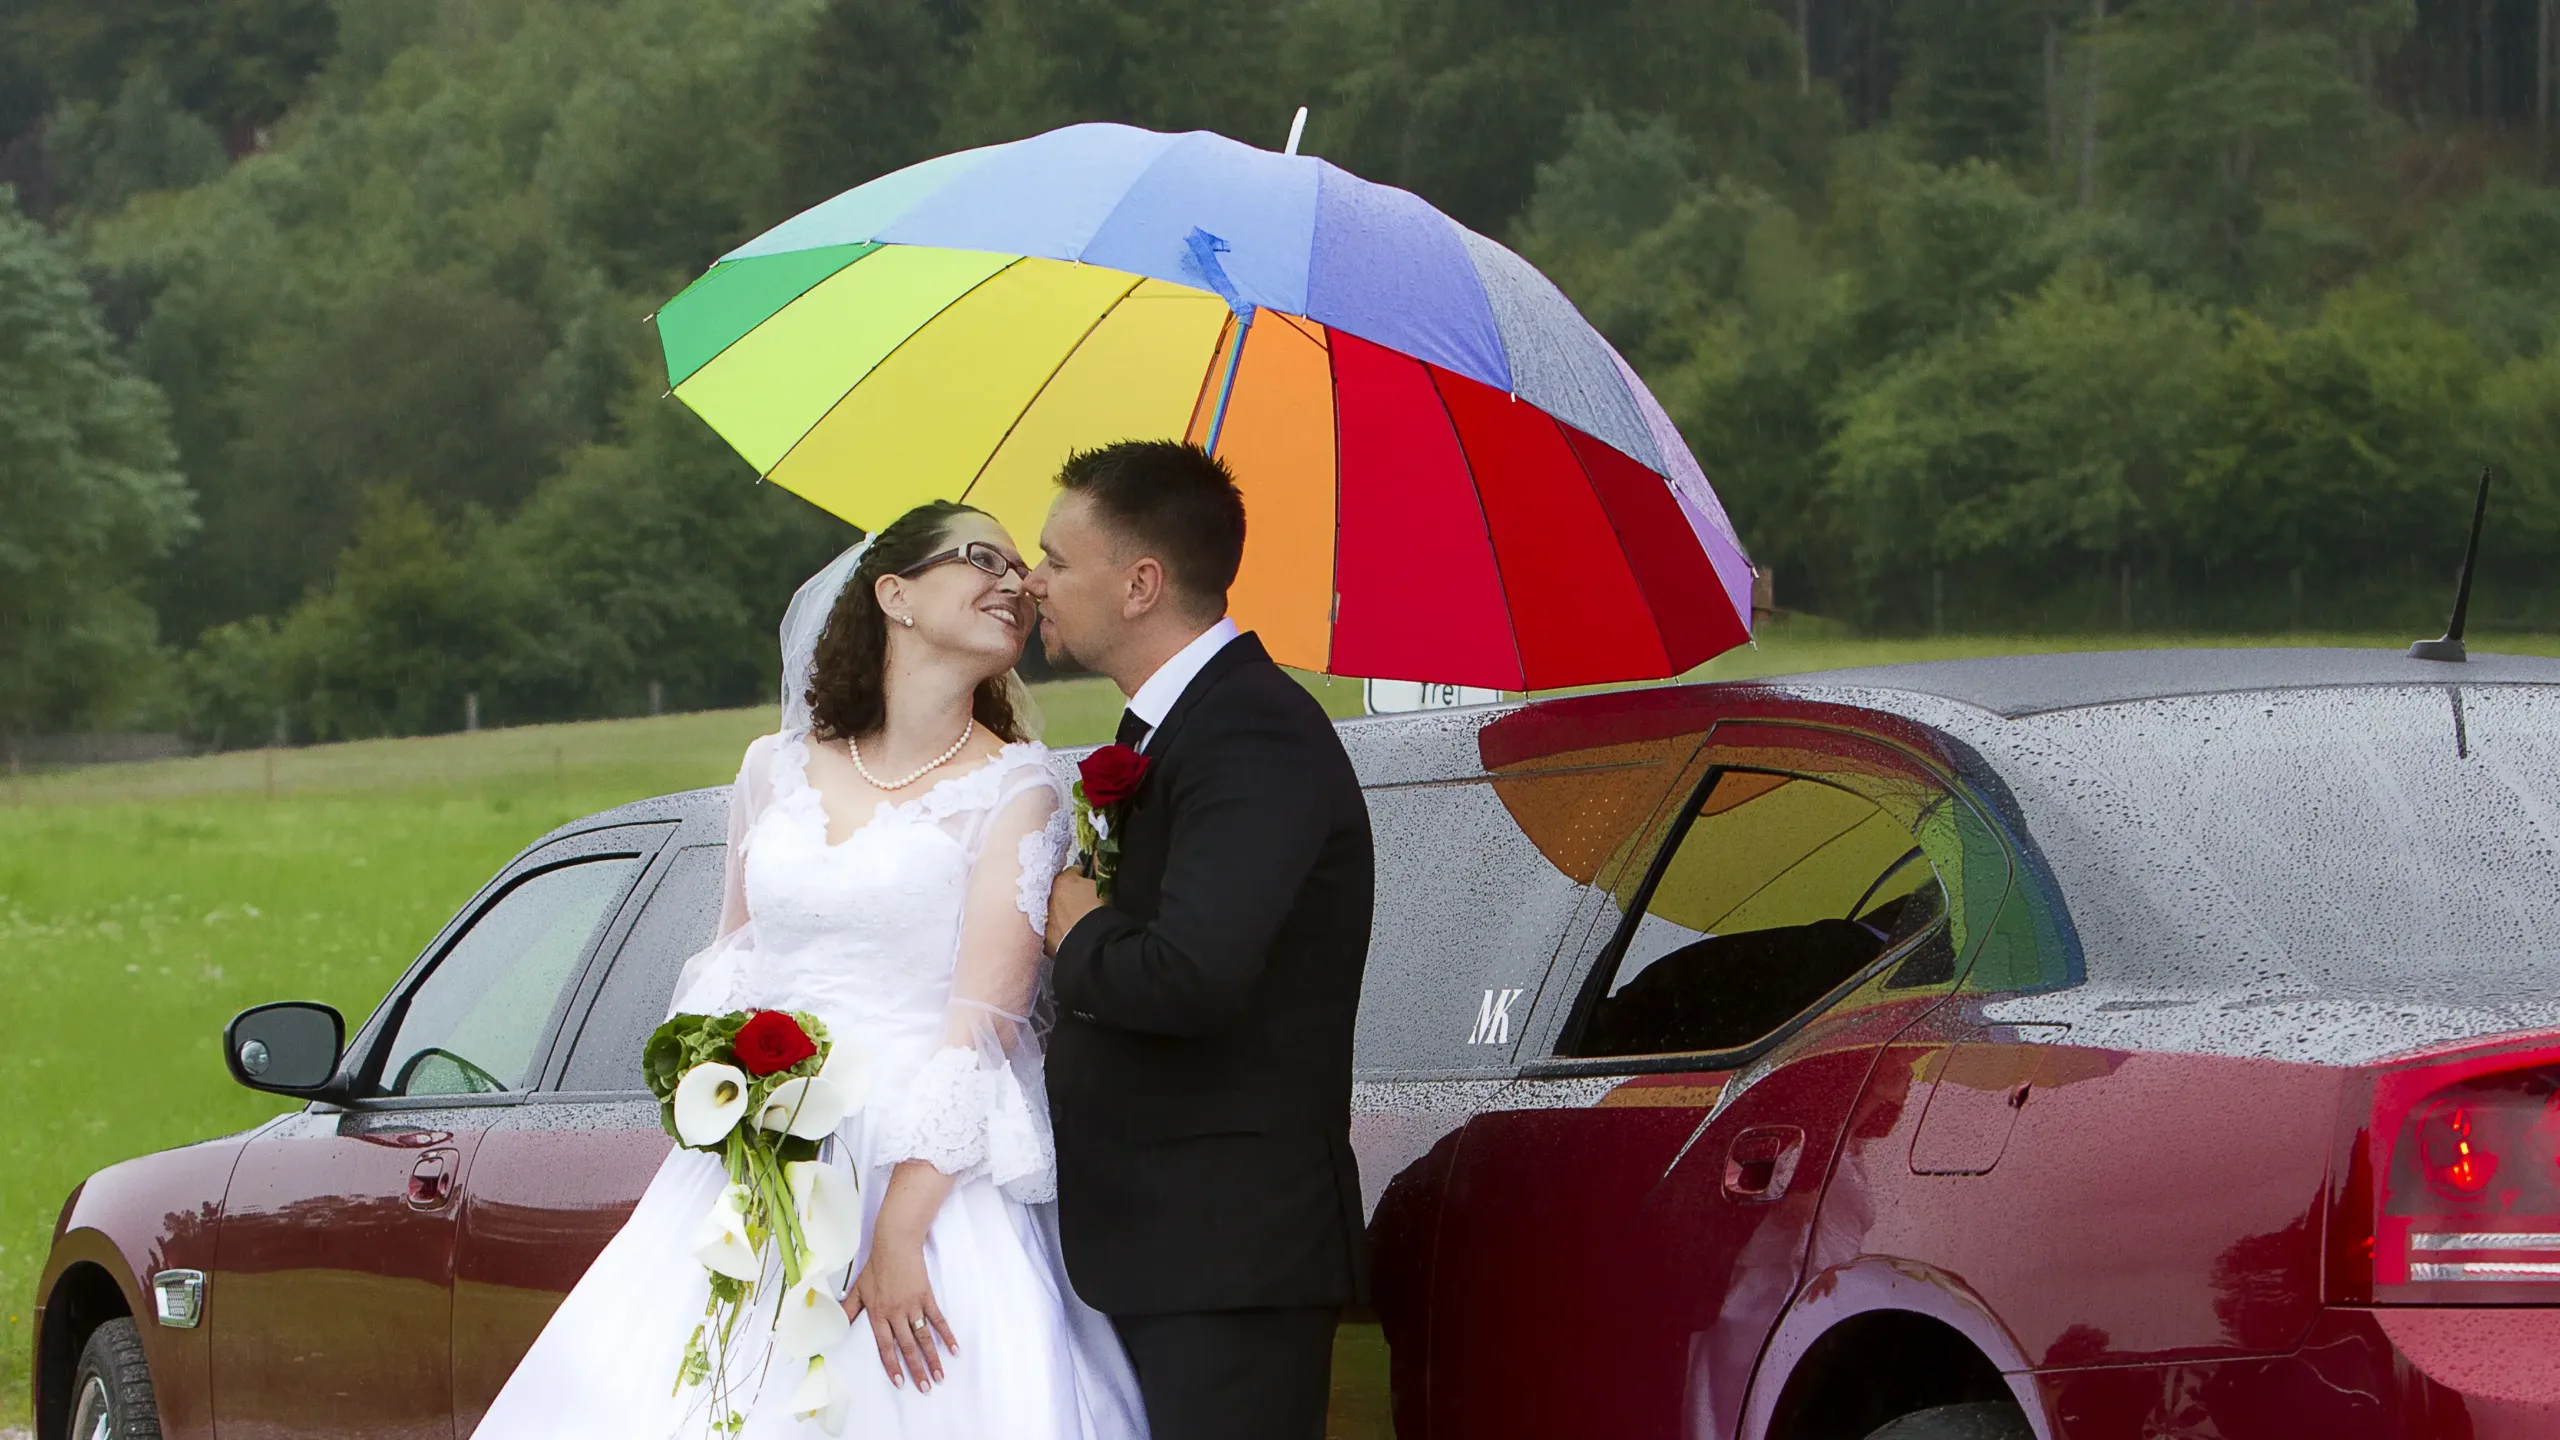 Hochzeit von Pamela und Kai im August - die Luxuslimousine und der Schirm schützen vor dem Regen